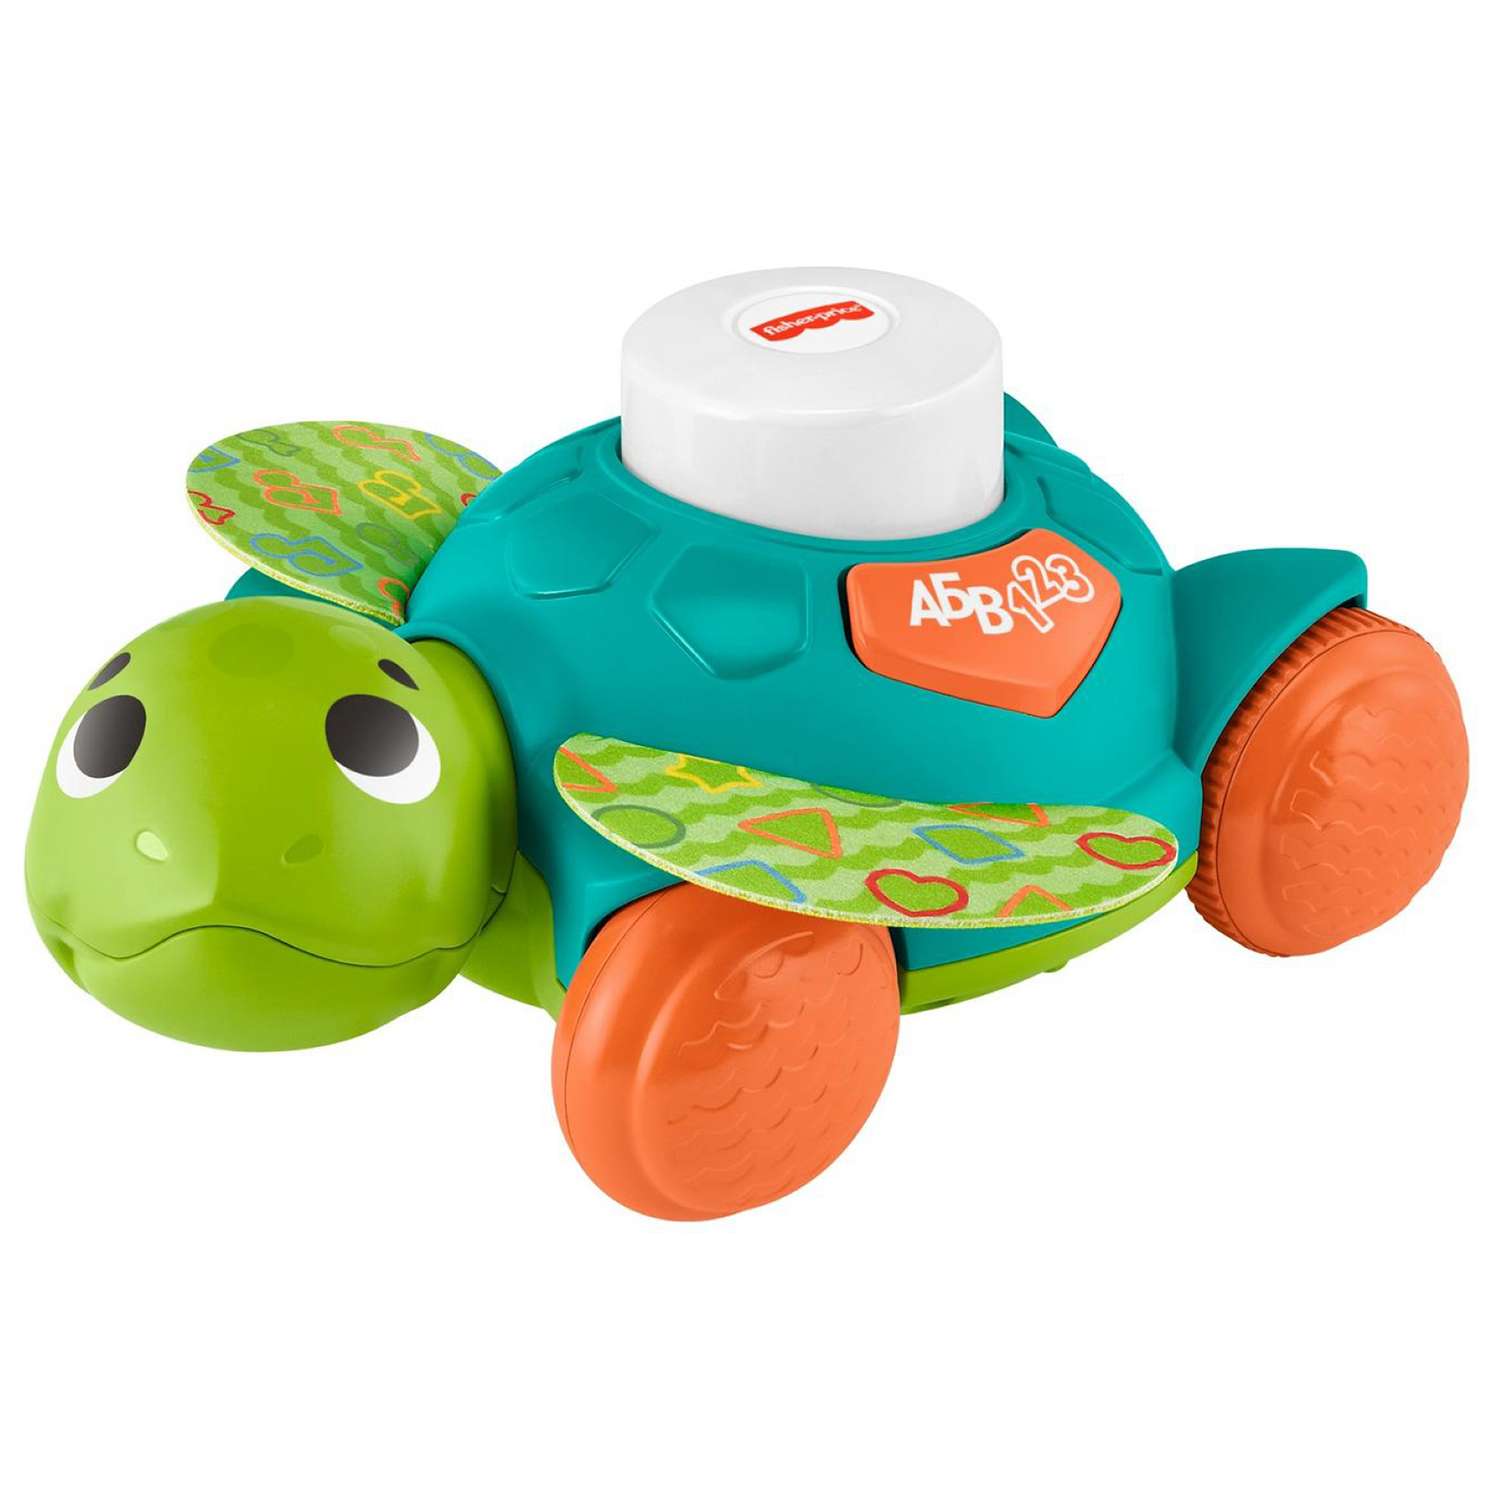 Игрушка Fisher Price Линкималс Морская черепаха для малышей развивающая  HDJ17 купить по цене 18190 ₸ в интернет-магазине Детский мир